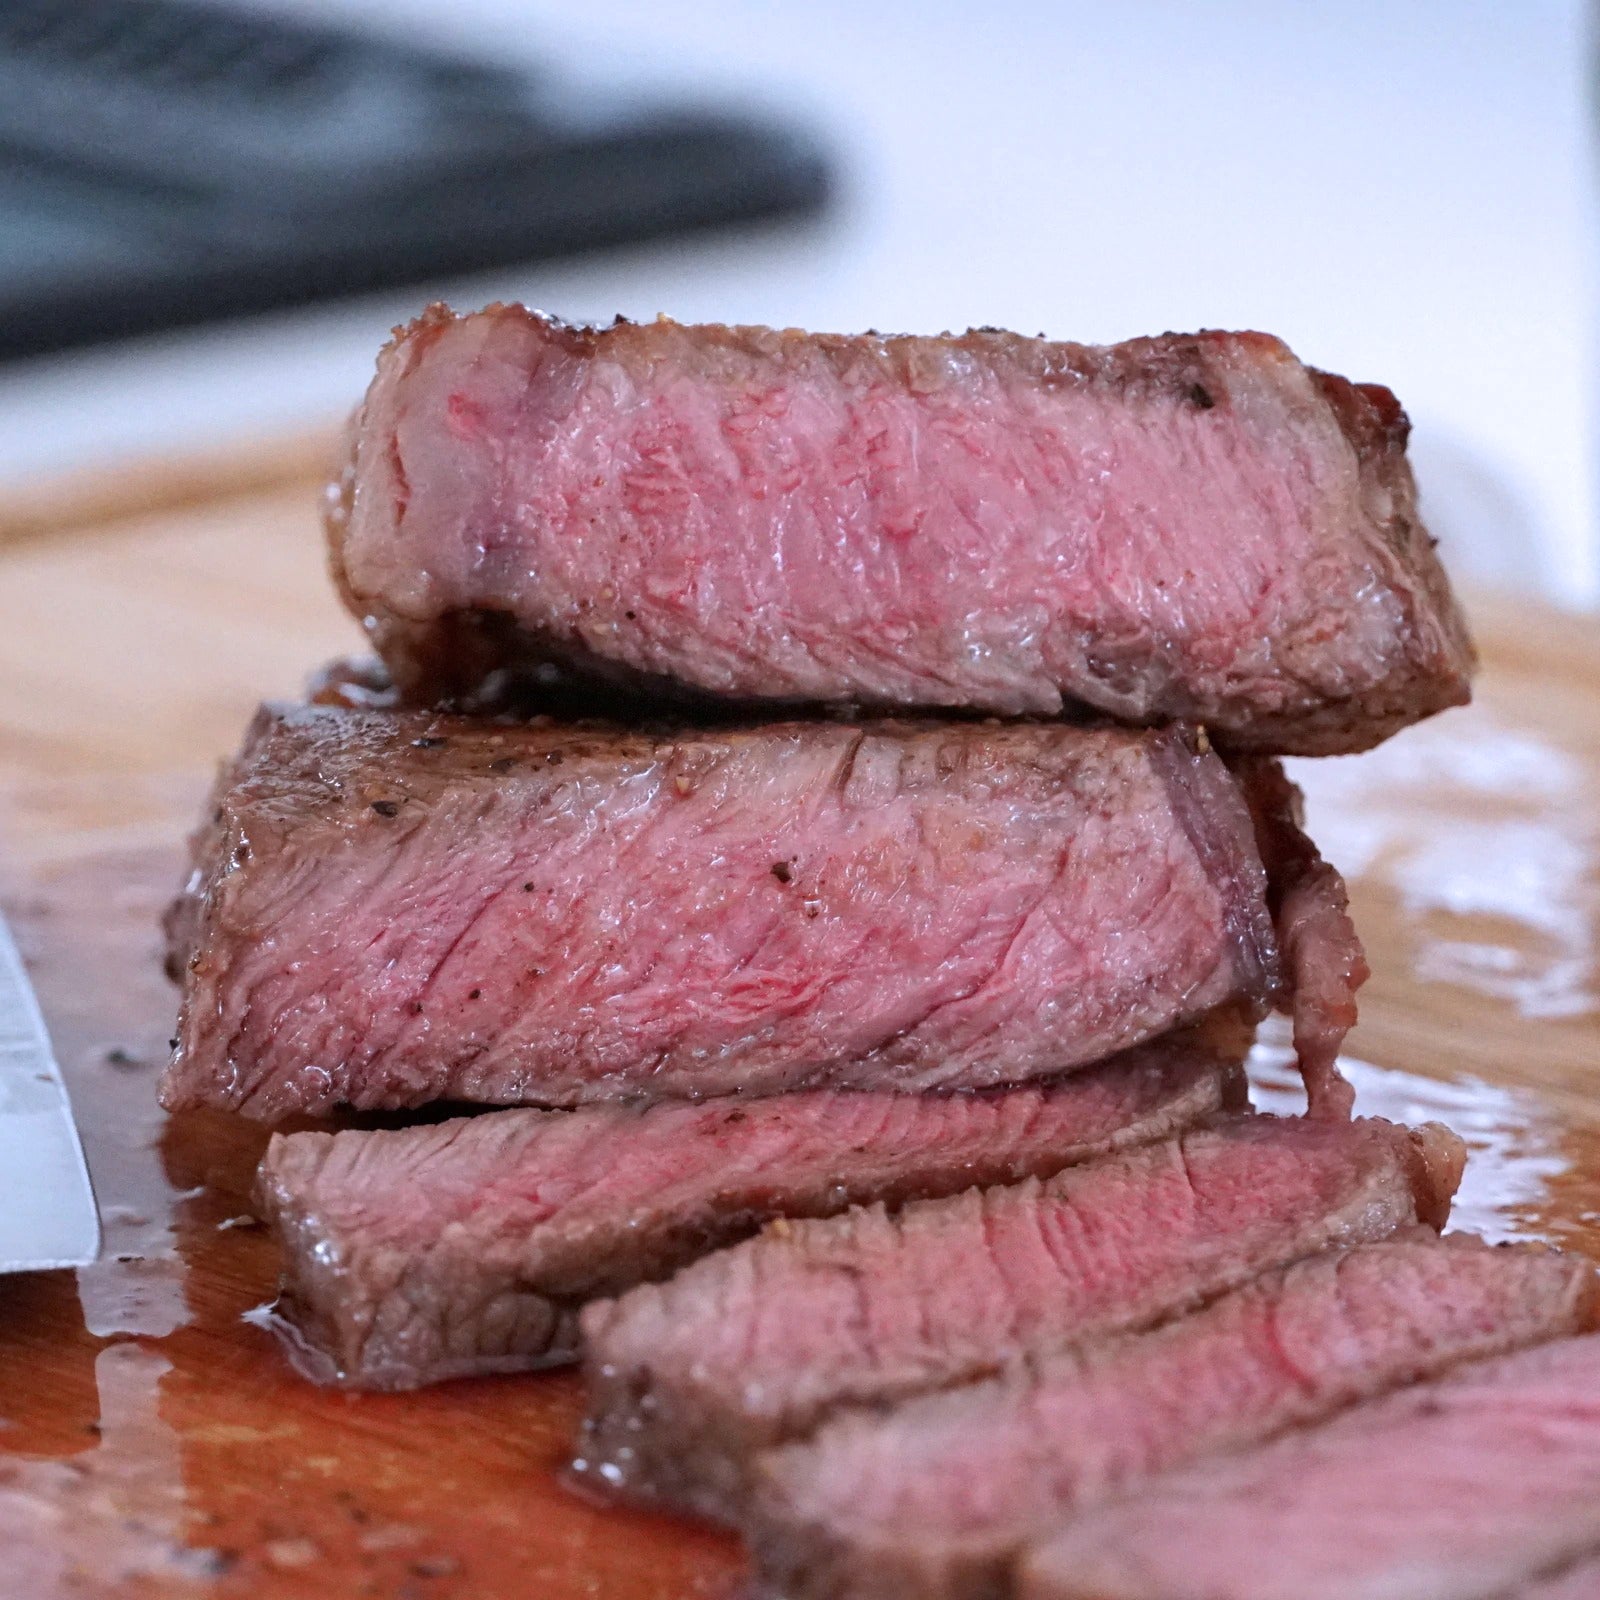 プレミアム グレインフェッドビーフ 霜降り 牛肉 サーロイン ステーキ 詰め合わせセット オーストラリア産 放牧牛 合計10点 (2kg) ホライズンファームズ